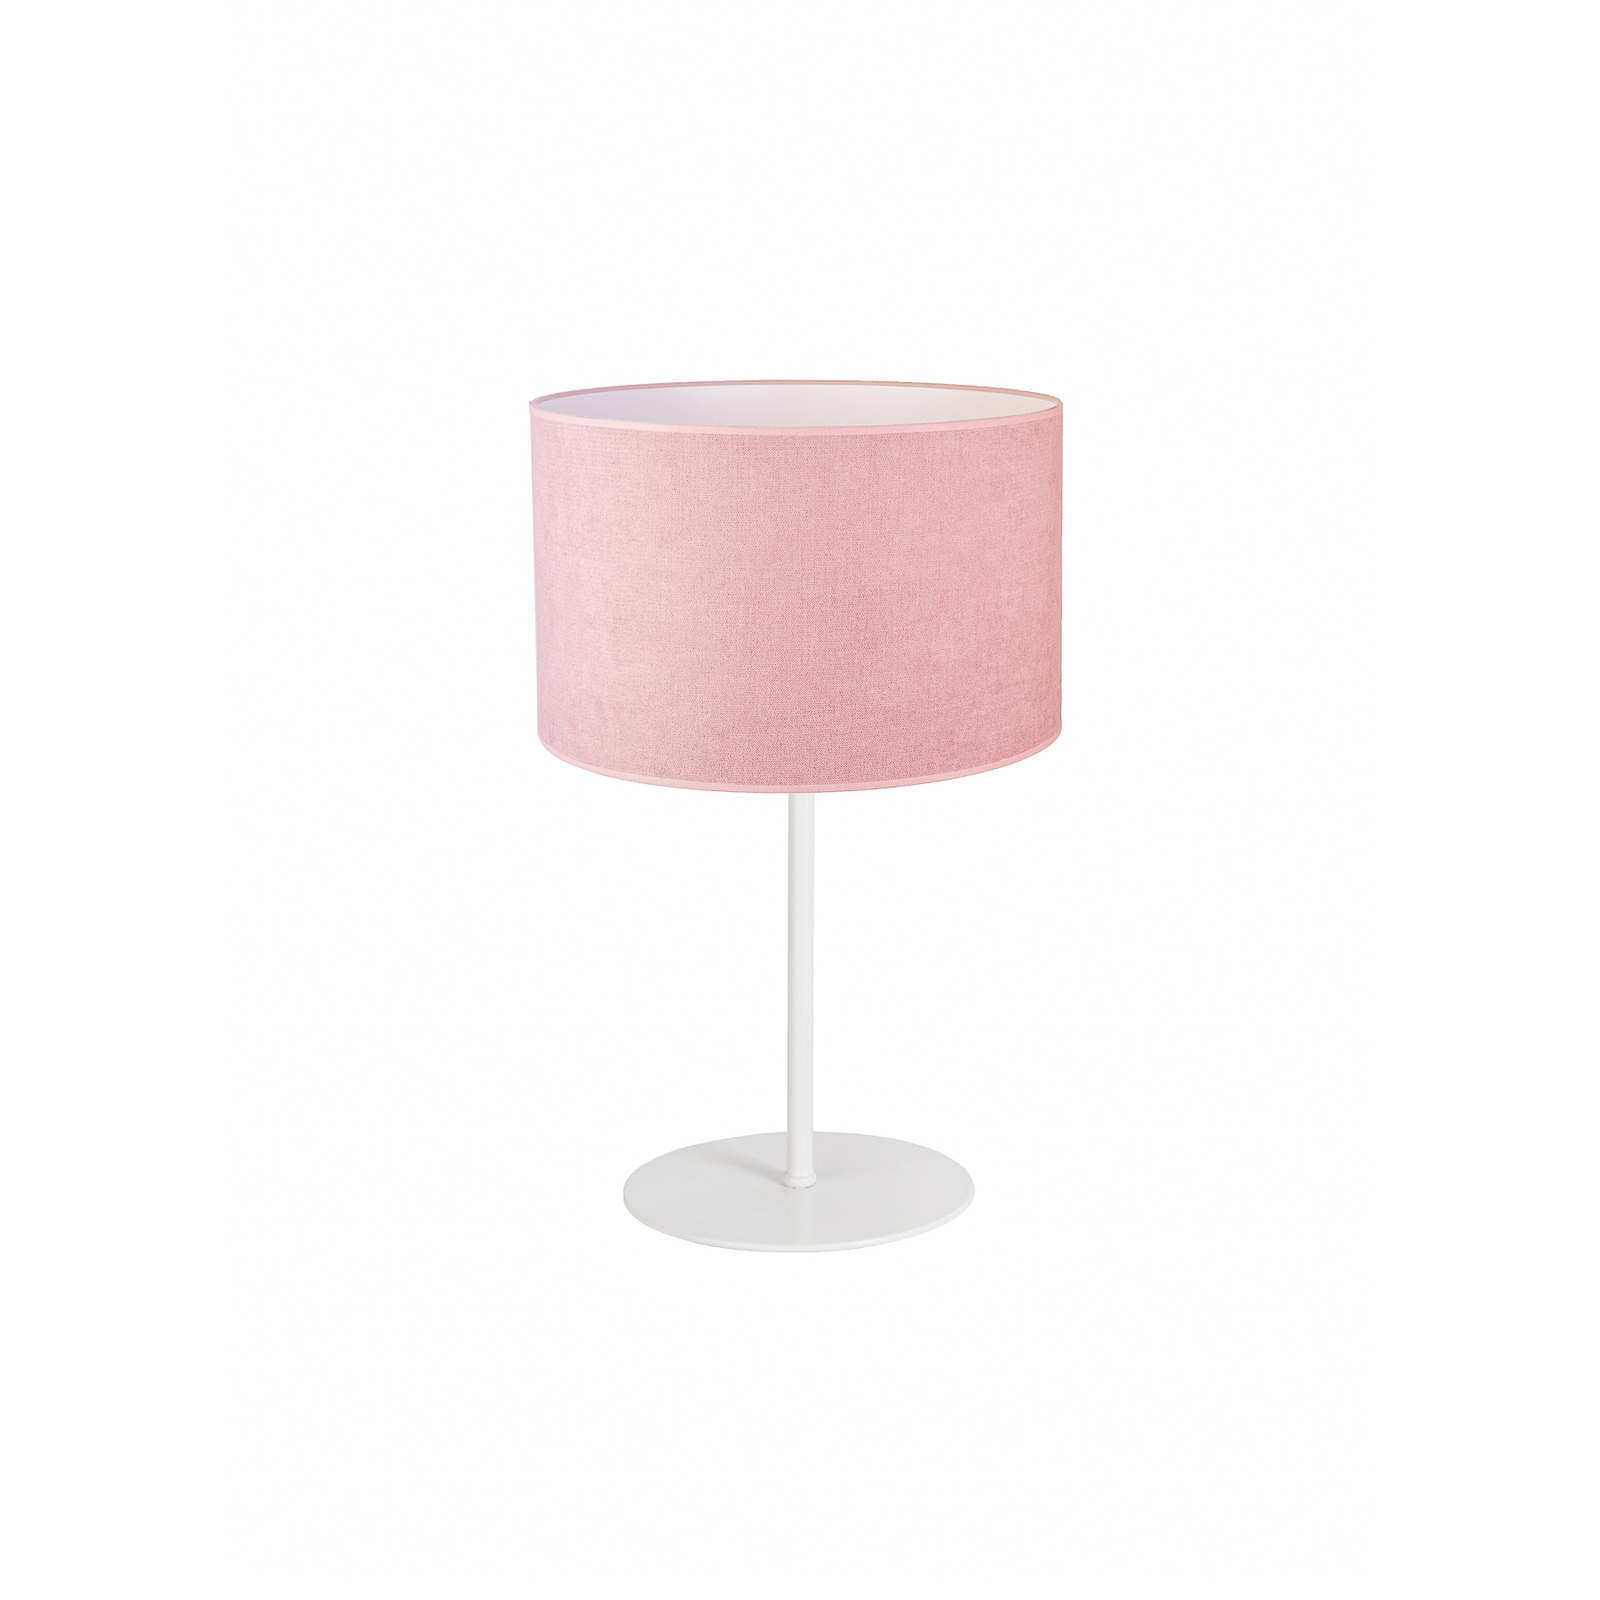 Tischlampe Pastell Roller Höhe 30cm rosa